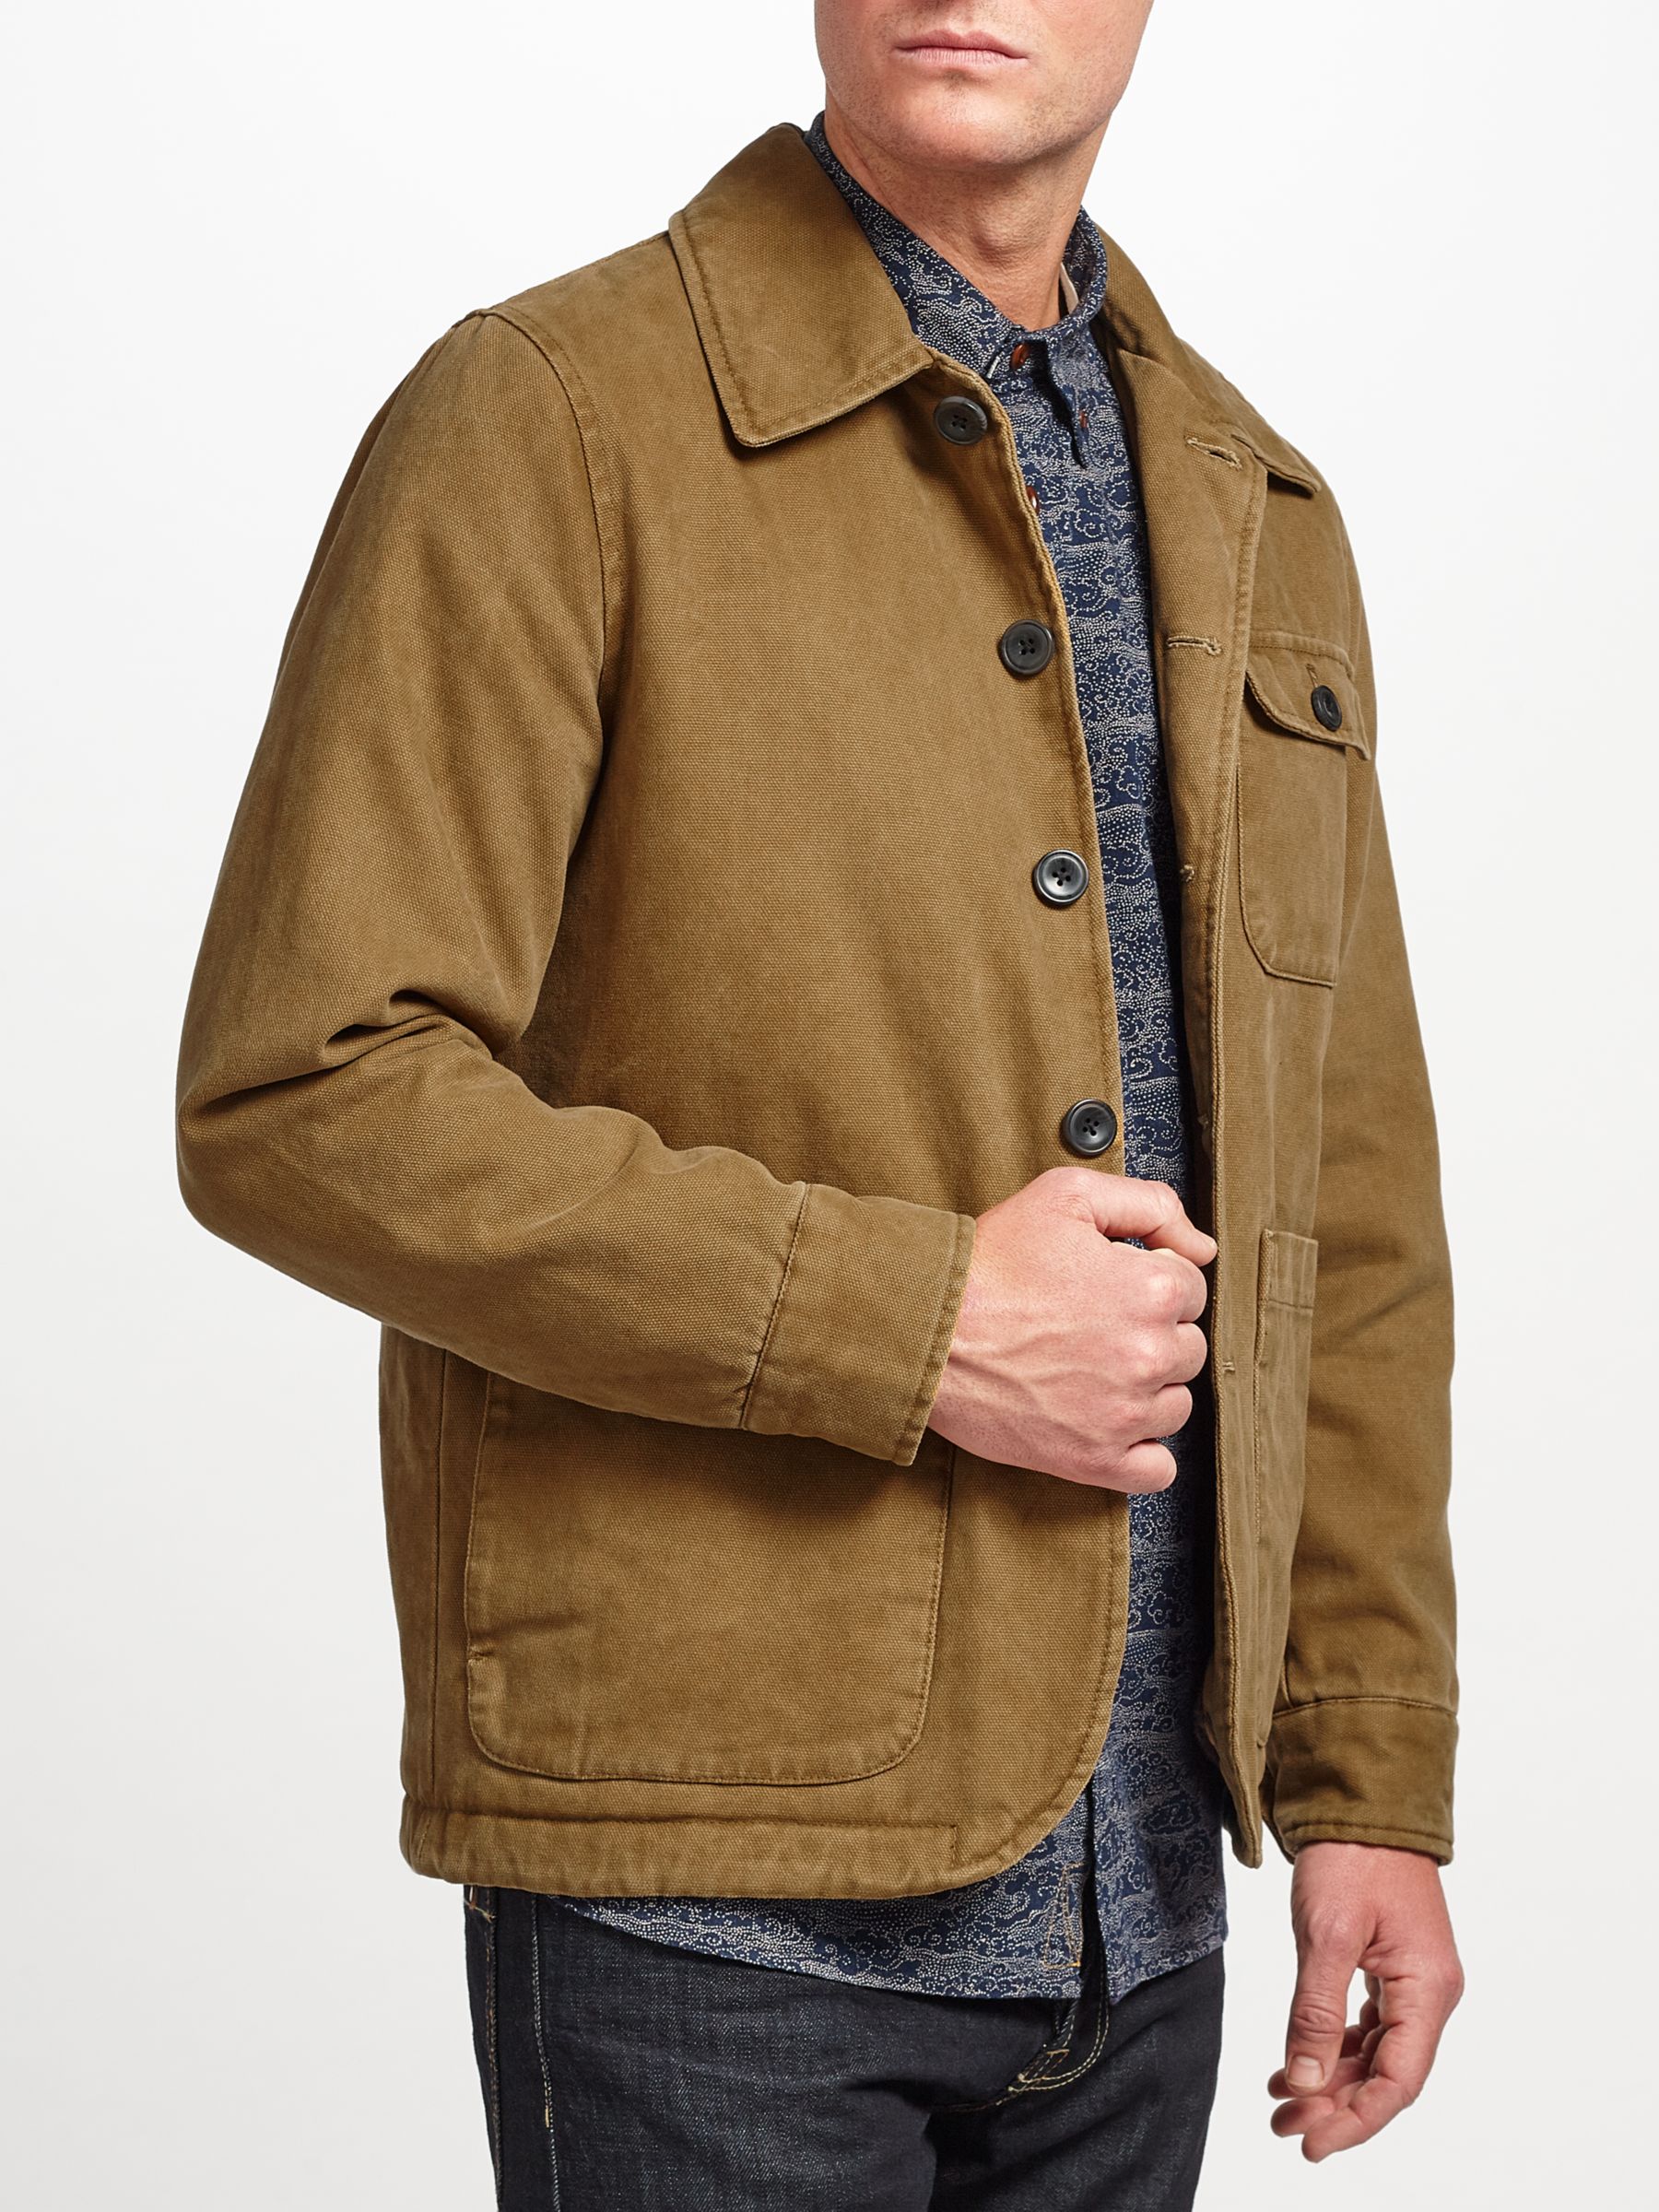 JOHN LEWIS & Co. Workwear Jacket, Brown